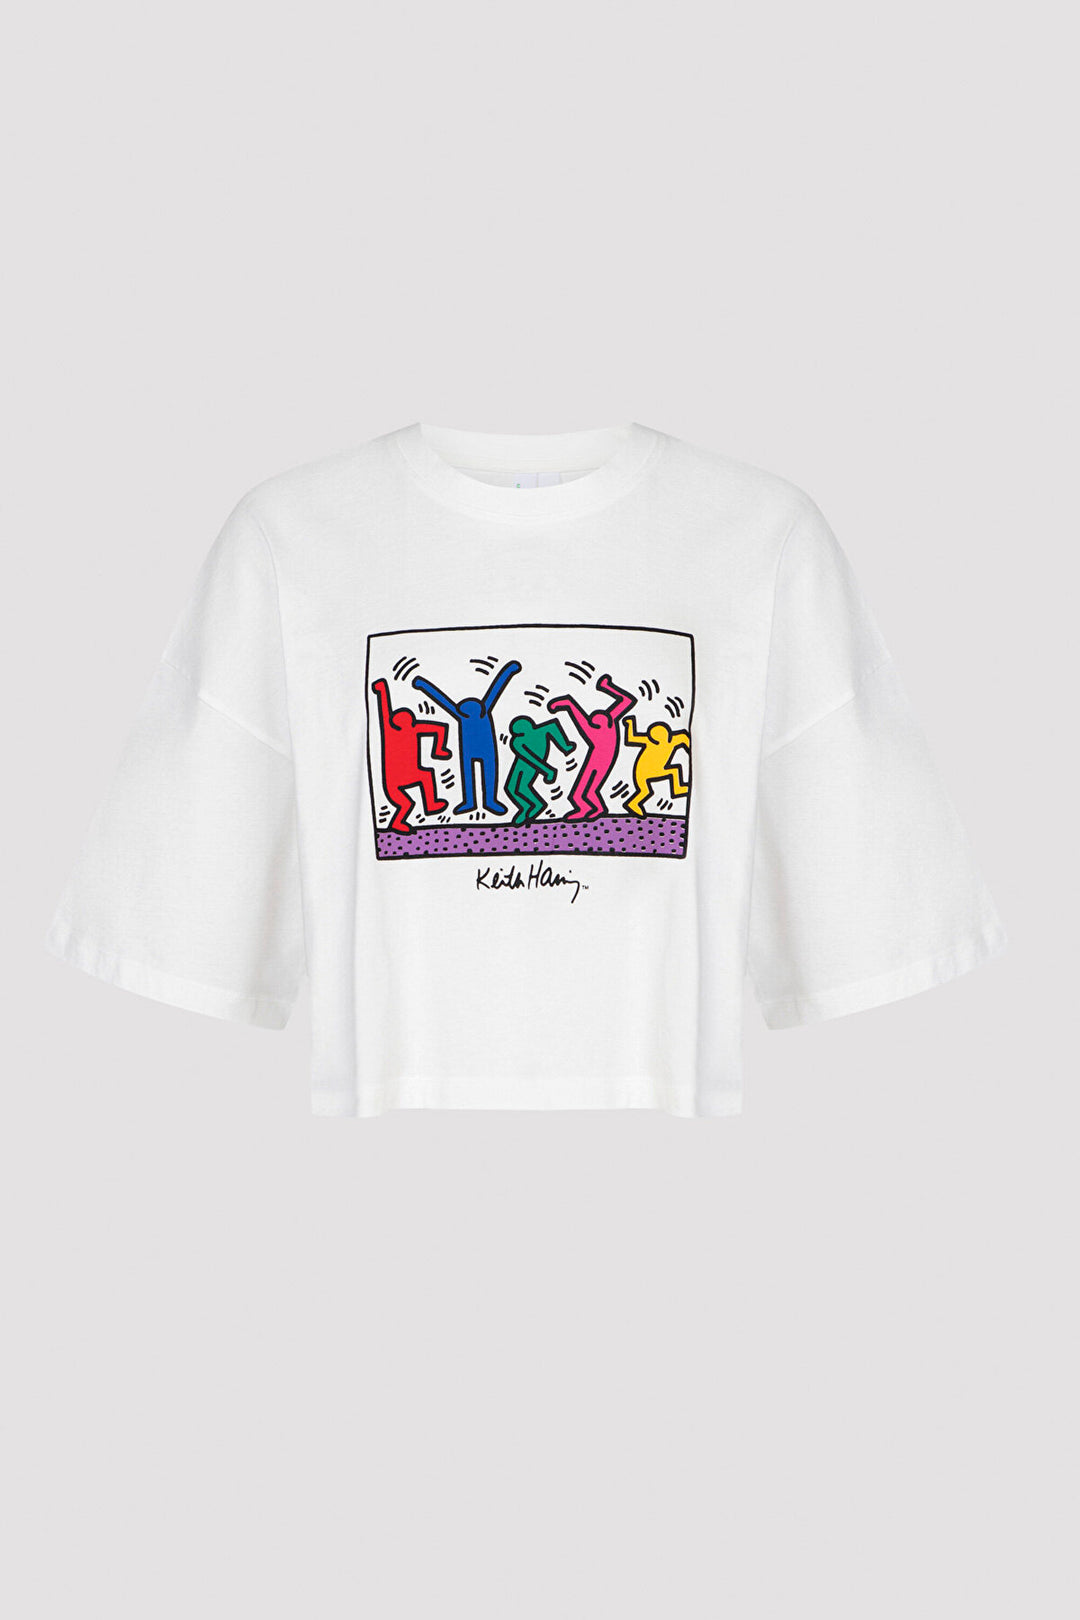 Joyful Tshirt Pj Top-Keith Haring Collection